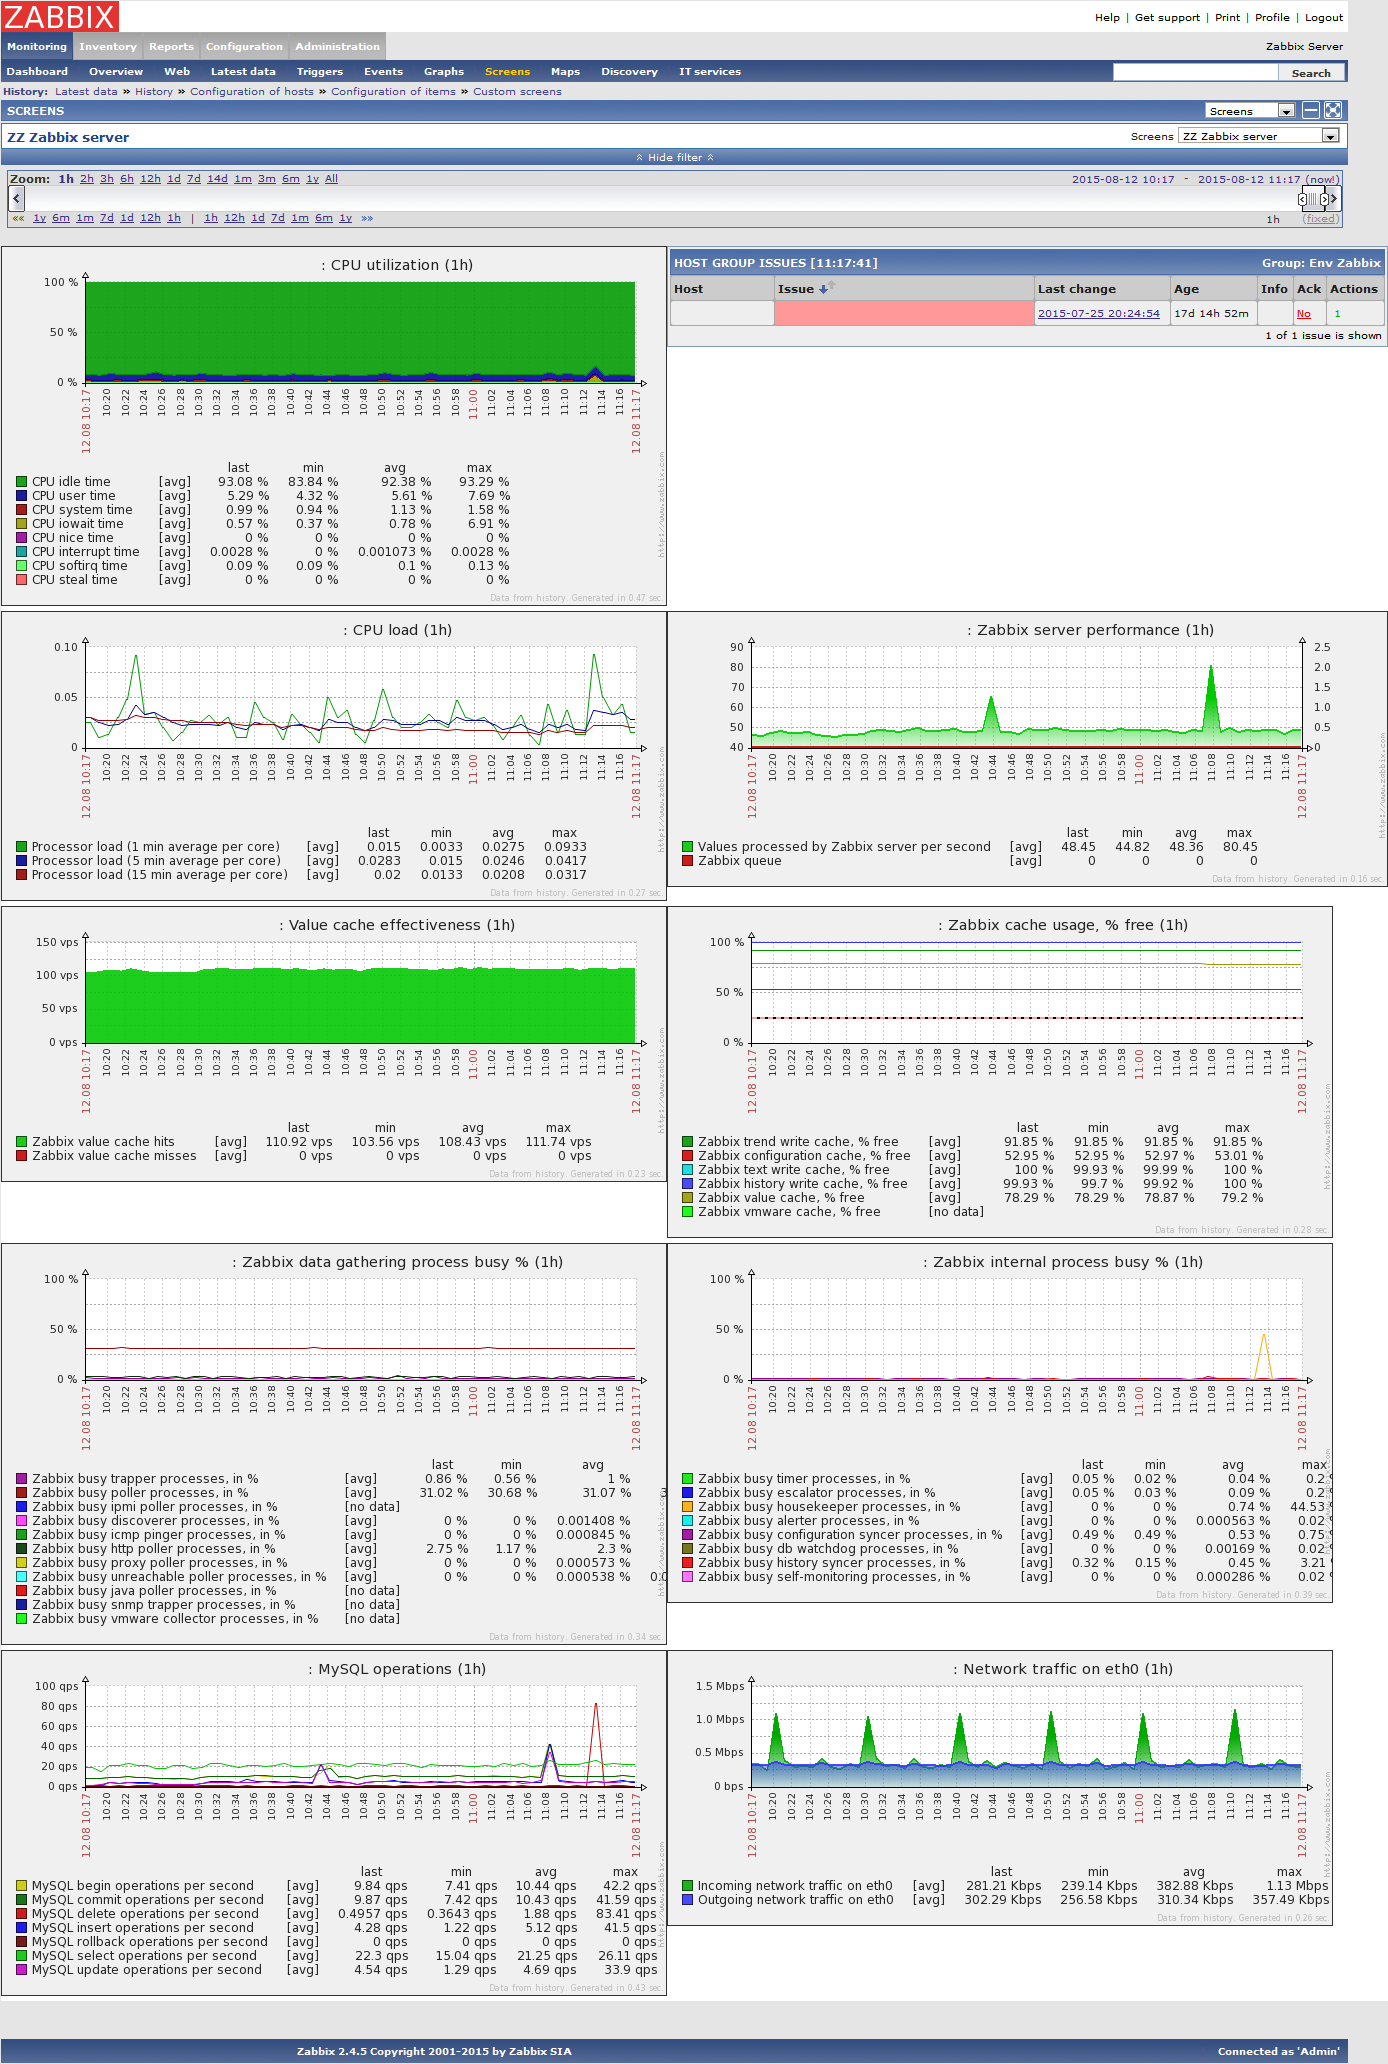 Zabbix server performance screen